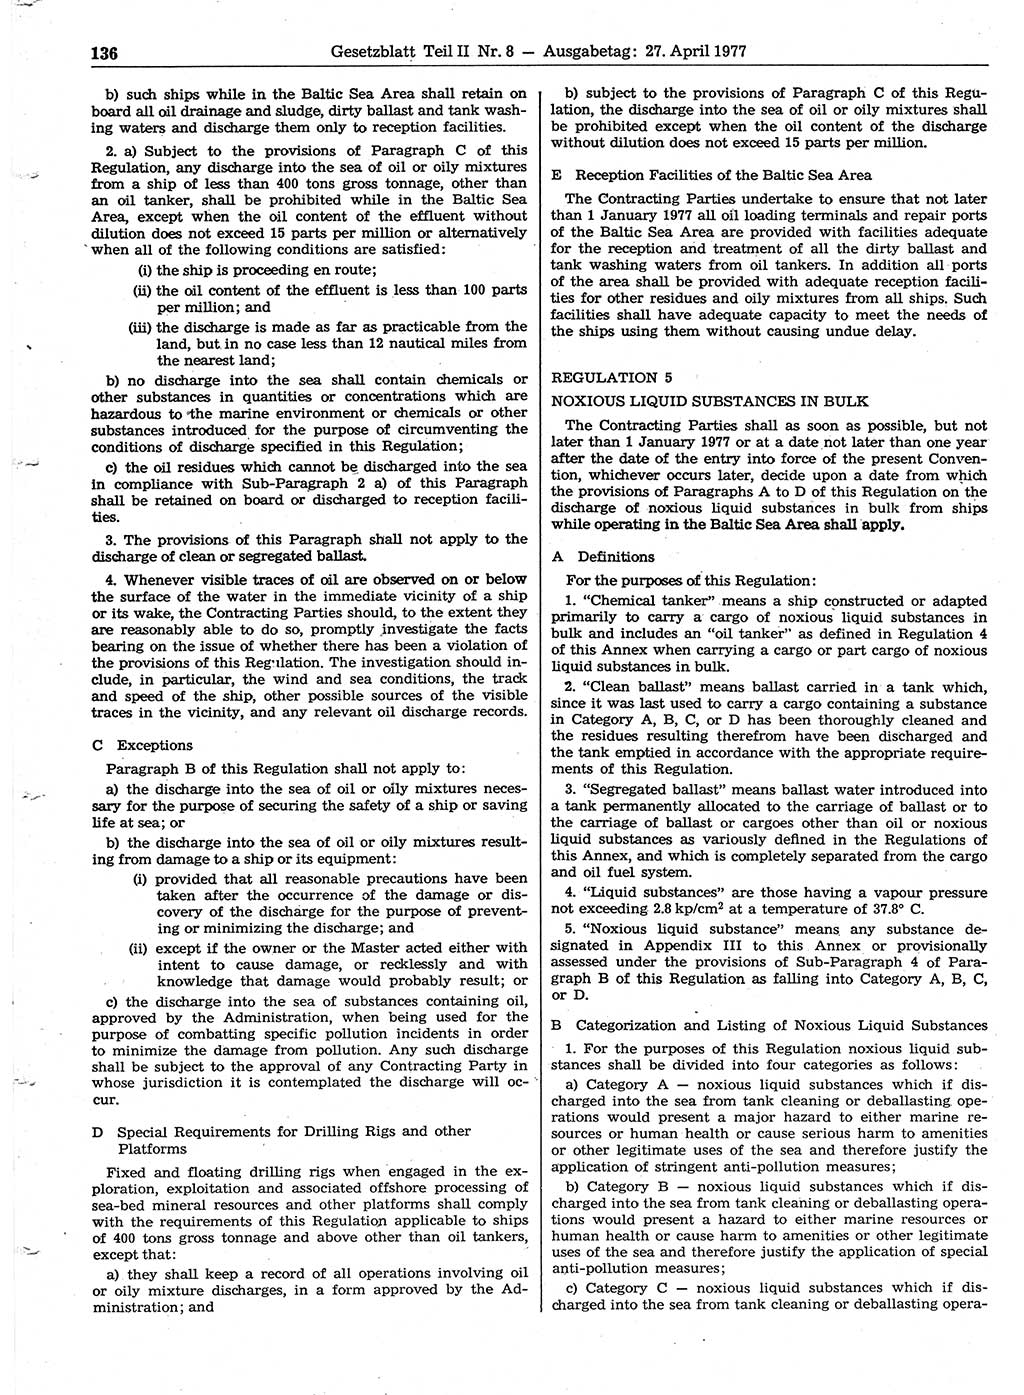 Gesetzblatt (GBl.) der Deutschen Demokratischen Republik (DDR) Teil ⅠⅠ 1977, Seite 136 (GBl. DDR ⅠⅠ 1977, S. 136)